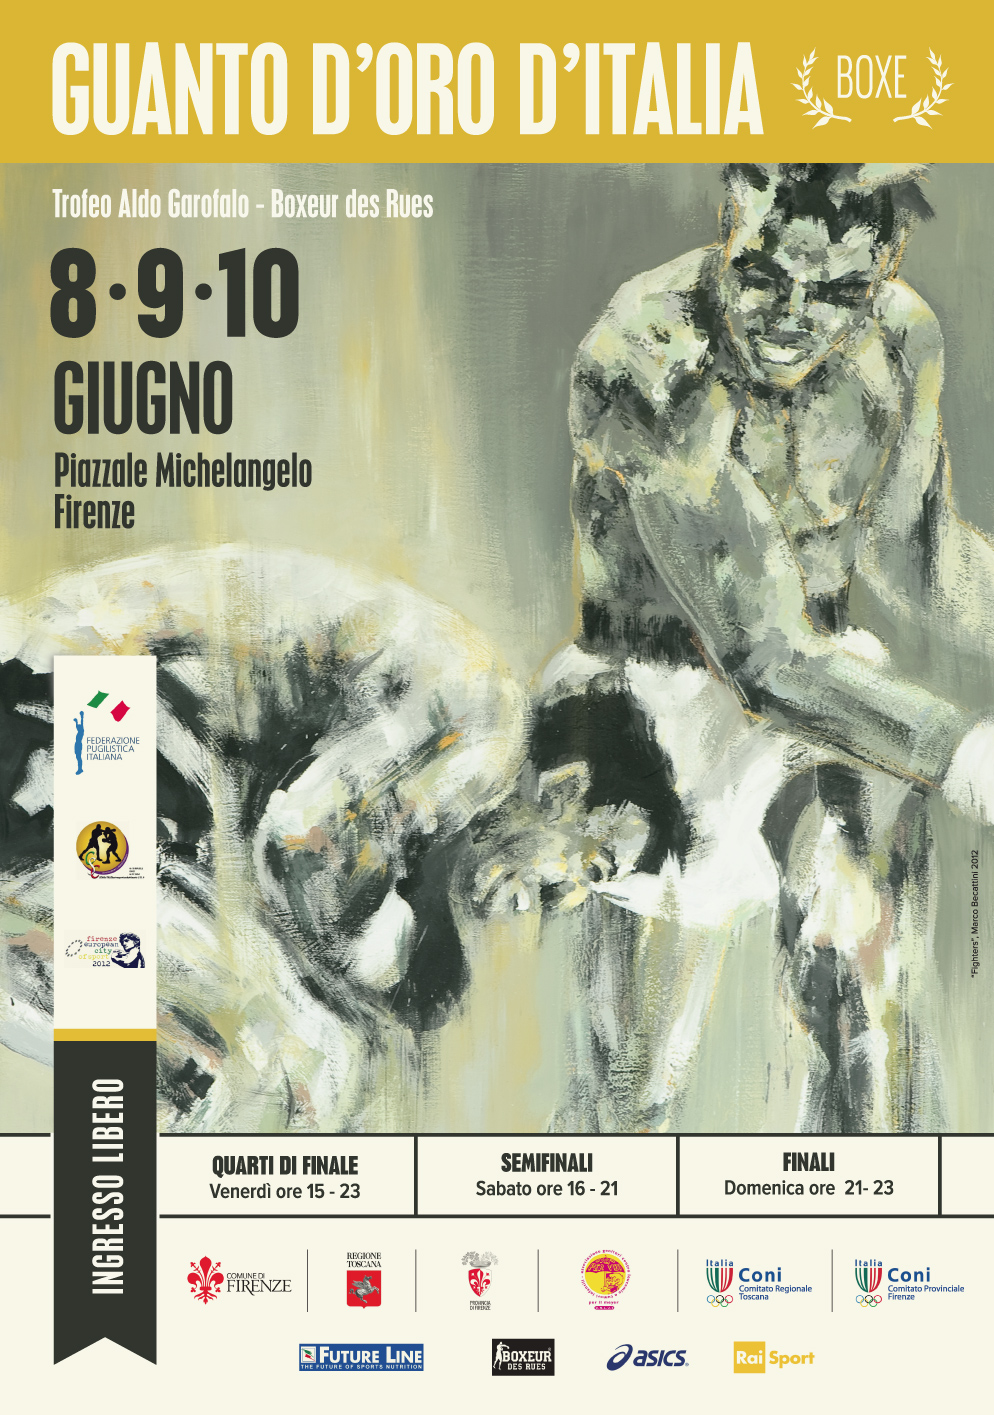 Guanto d'Oro d'Italia - Firenze 2012 Cambio Orario Finale